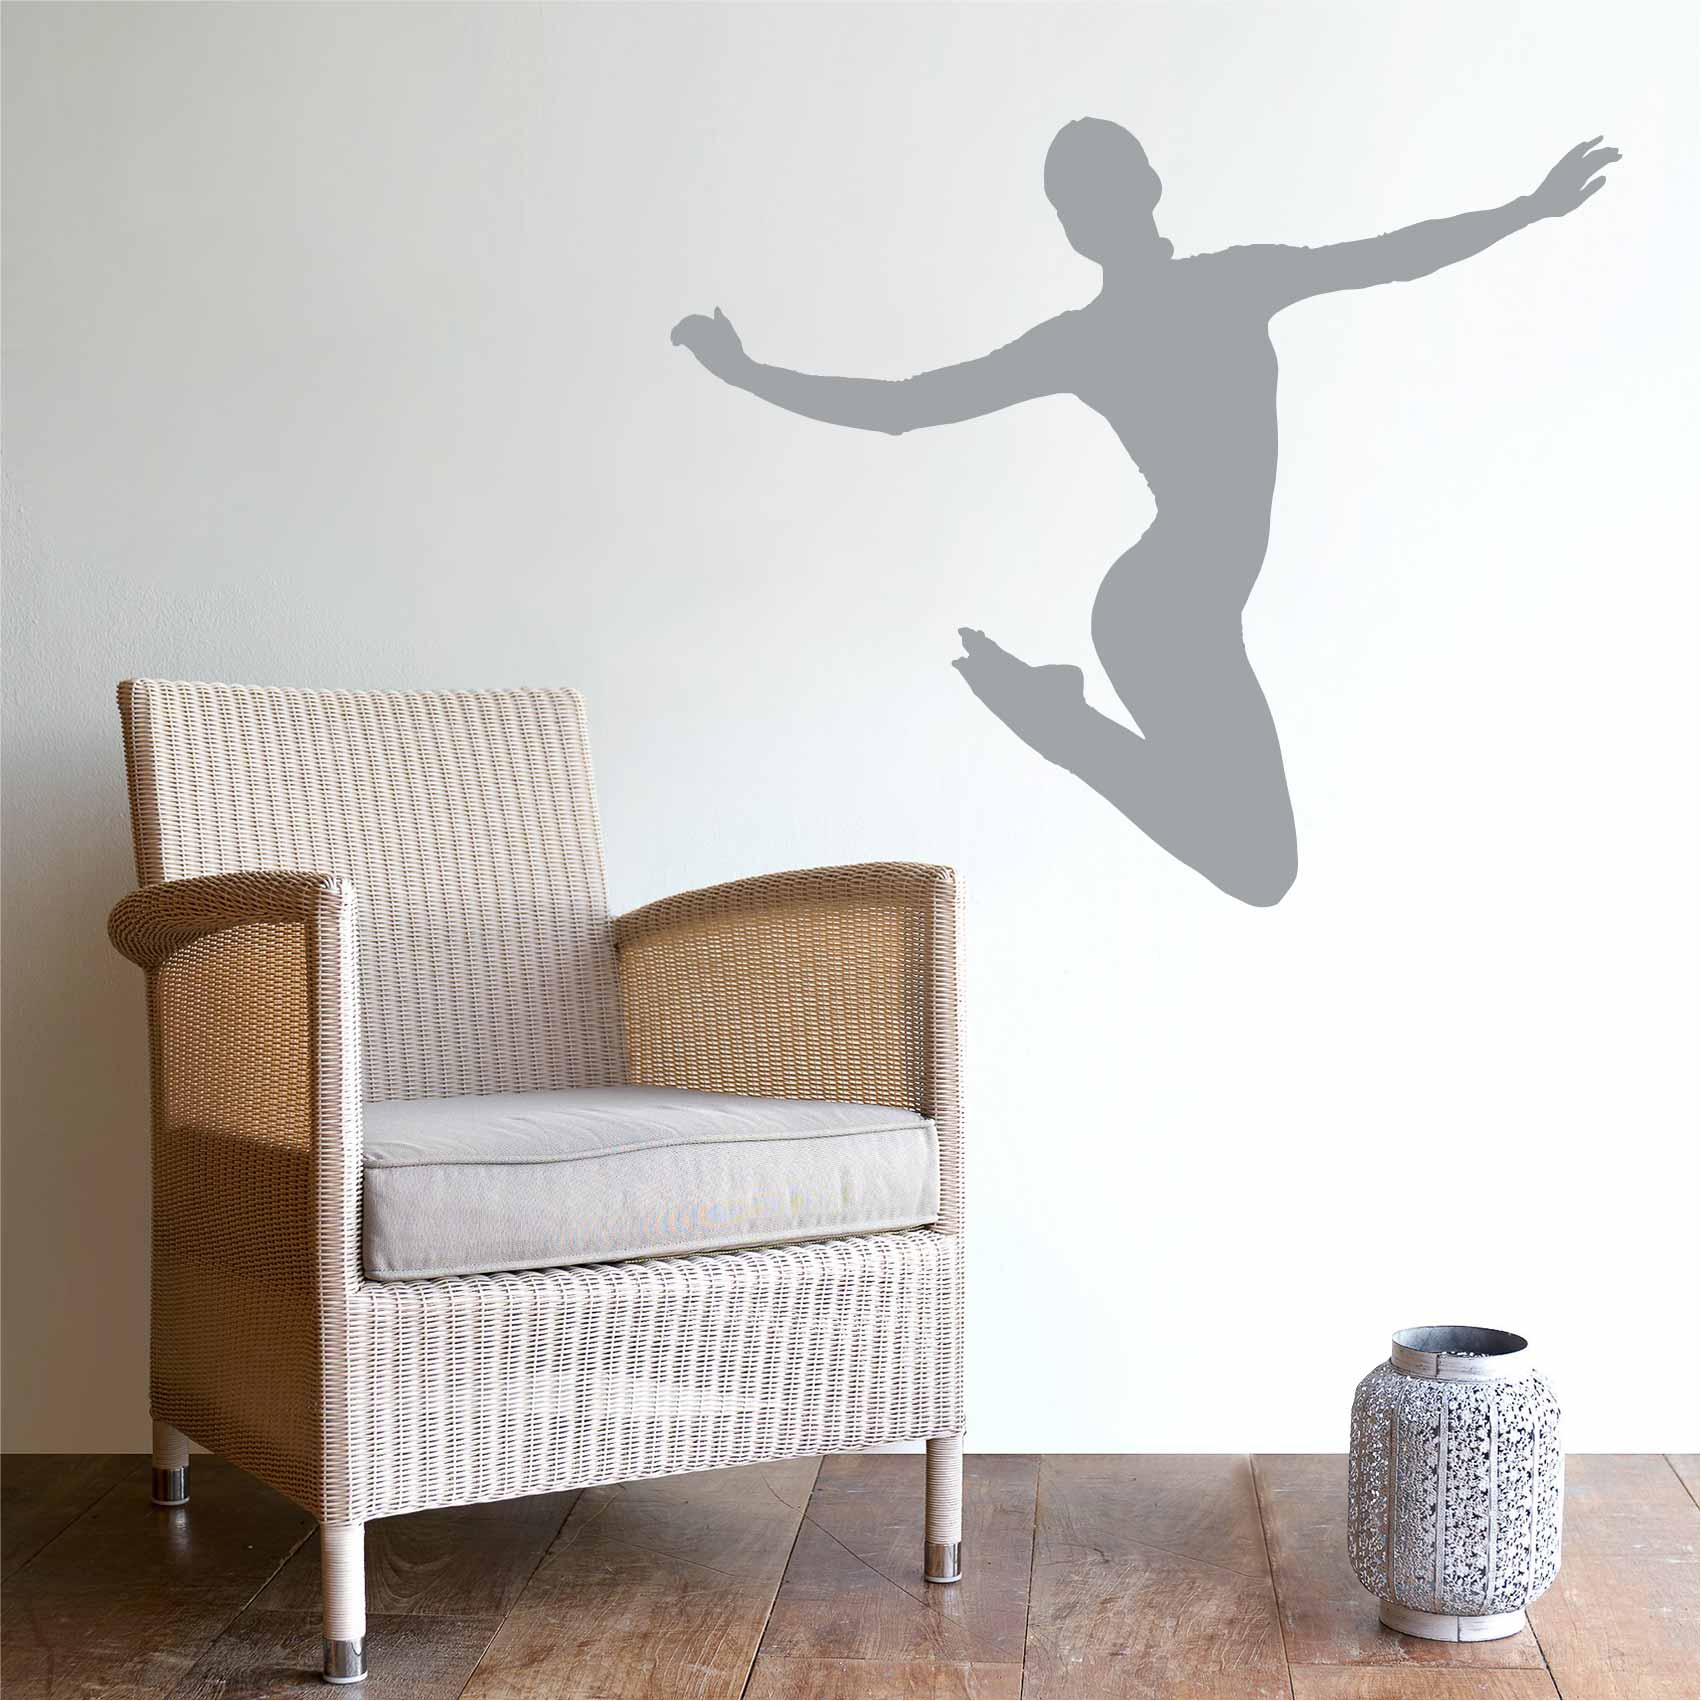 stickers-de-danseuse-ref37silhouette-stickers-muraux-silhouette-autocollant-chambre-salon-sticker-mural-ombre